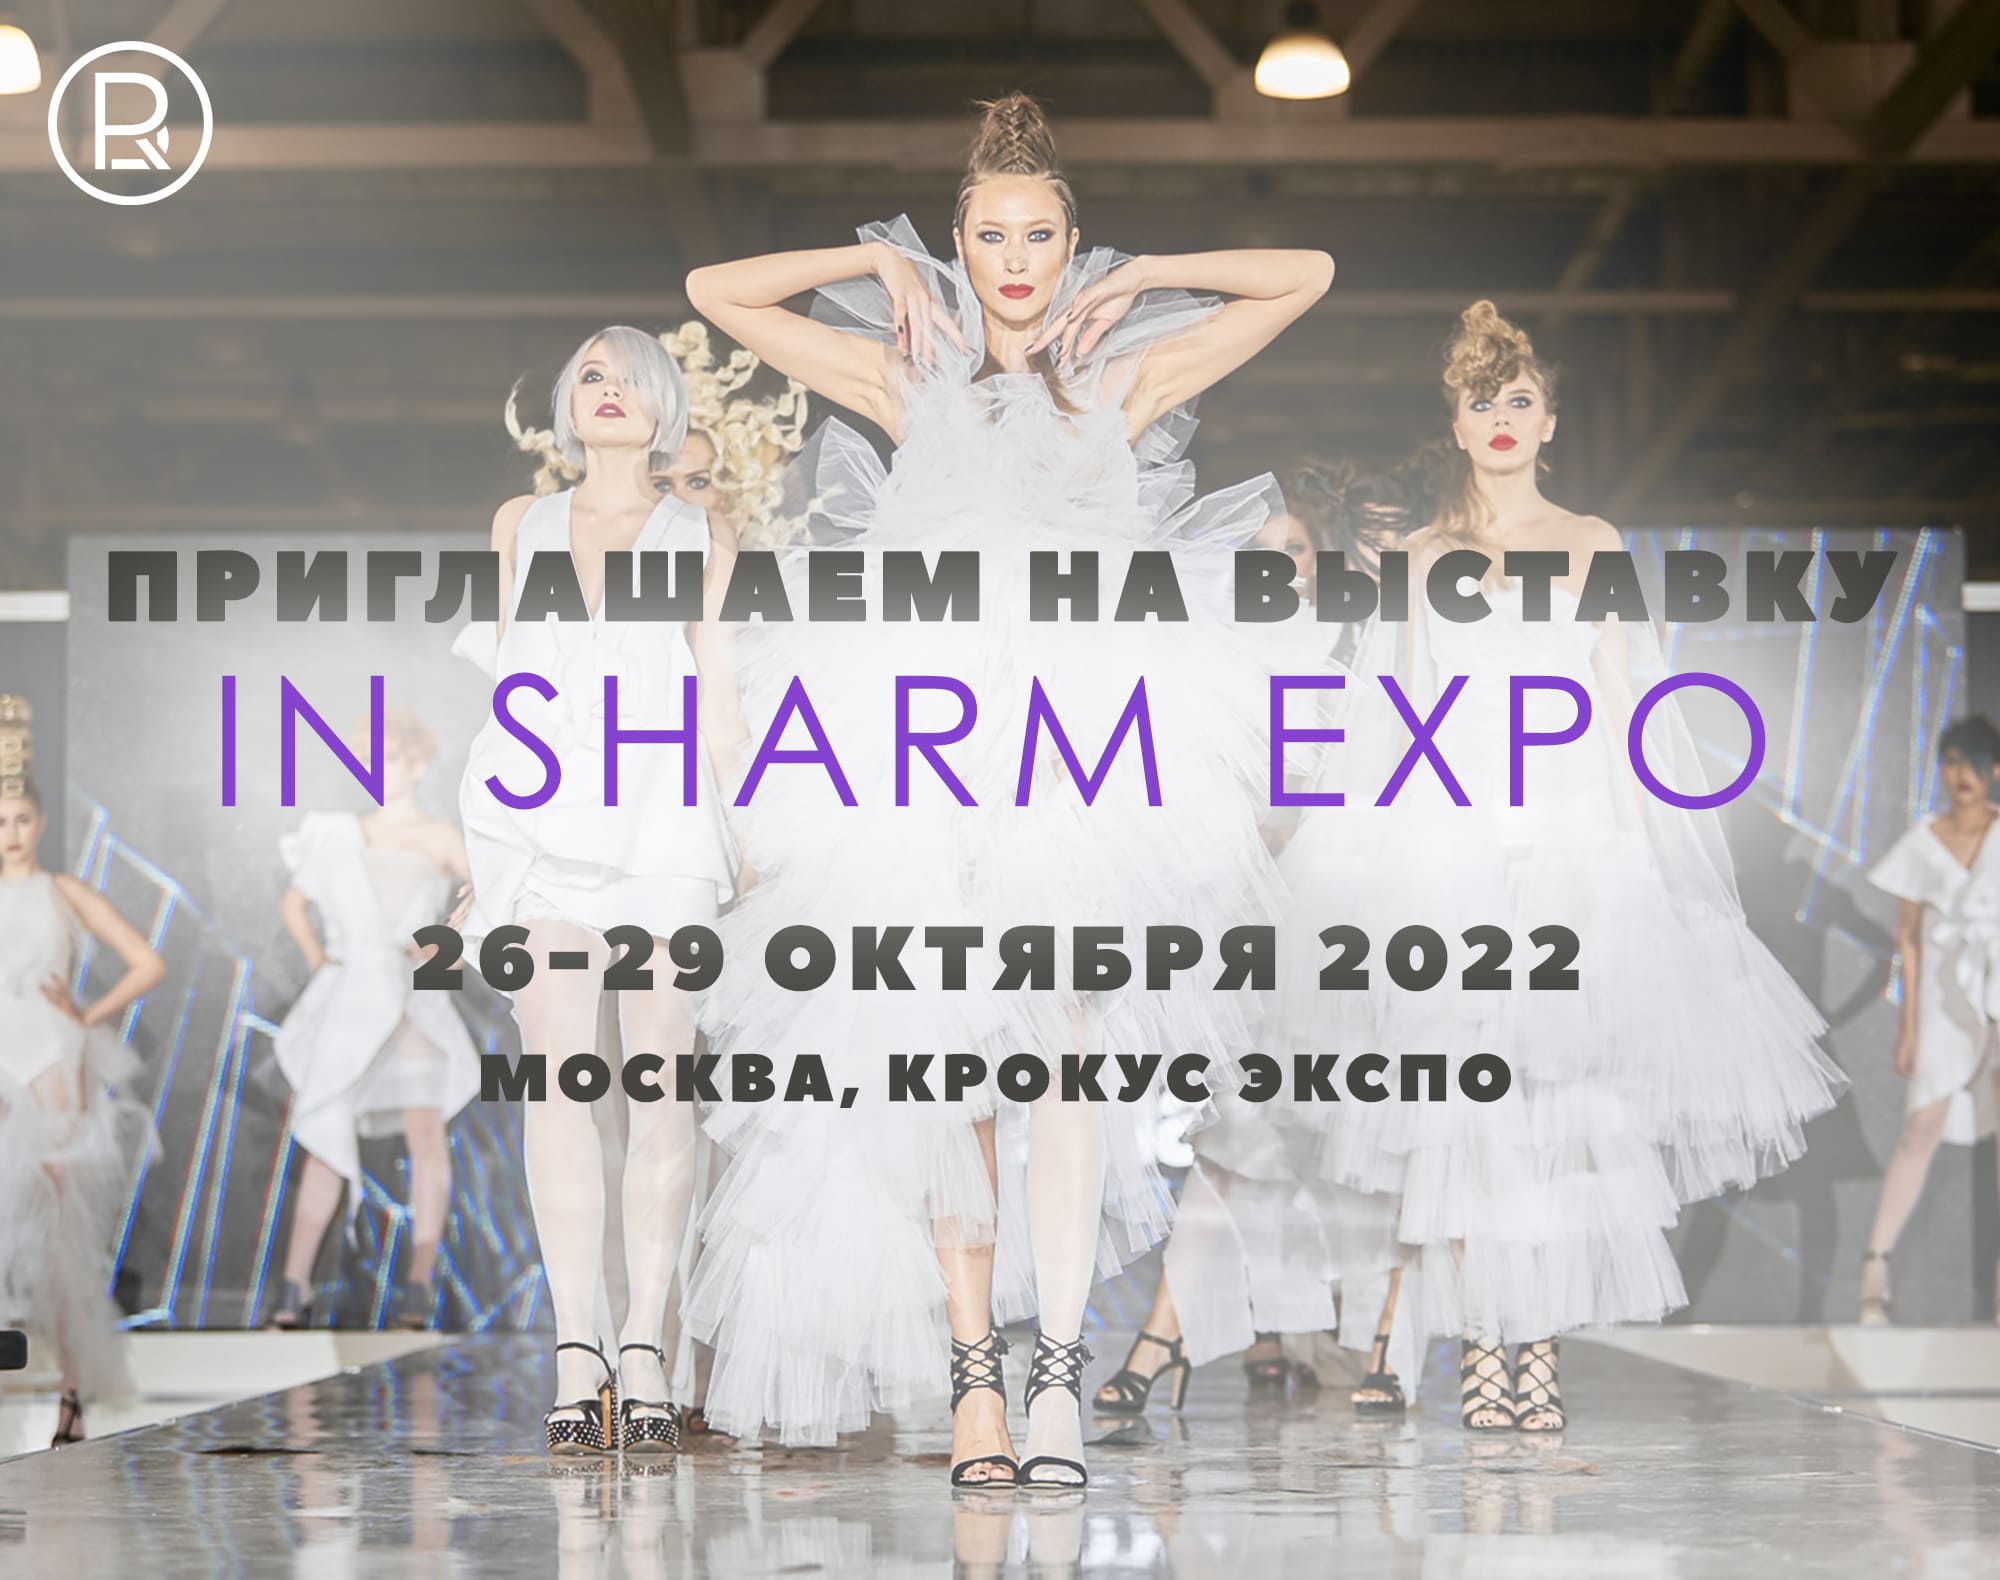 Приглашаем на выставку IN SHARM EXPO